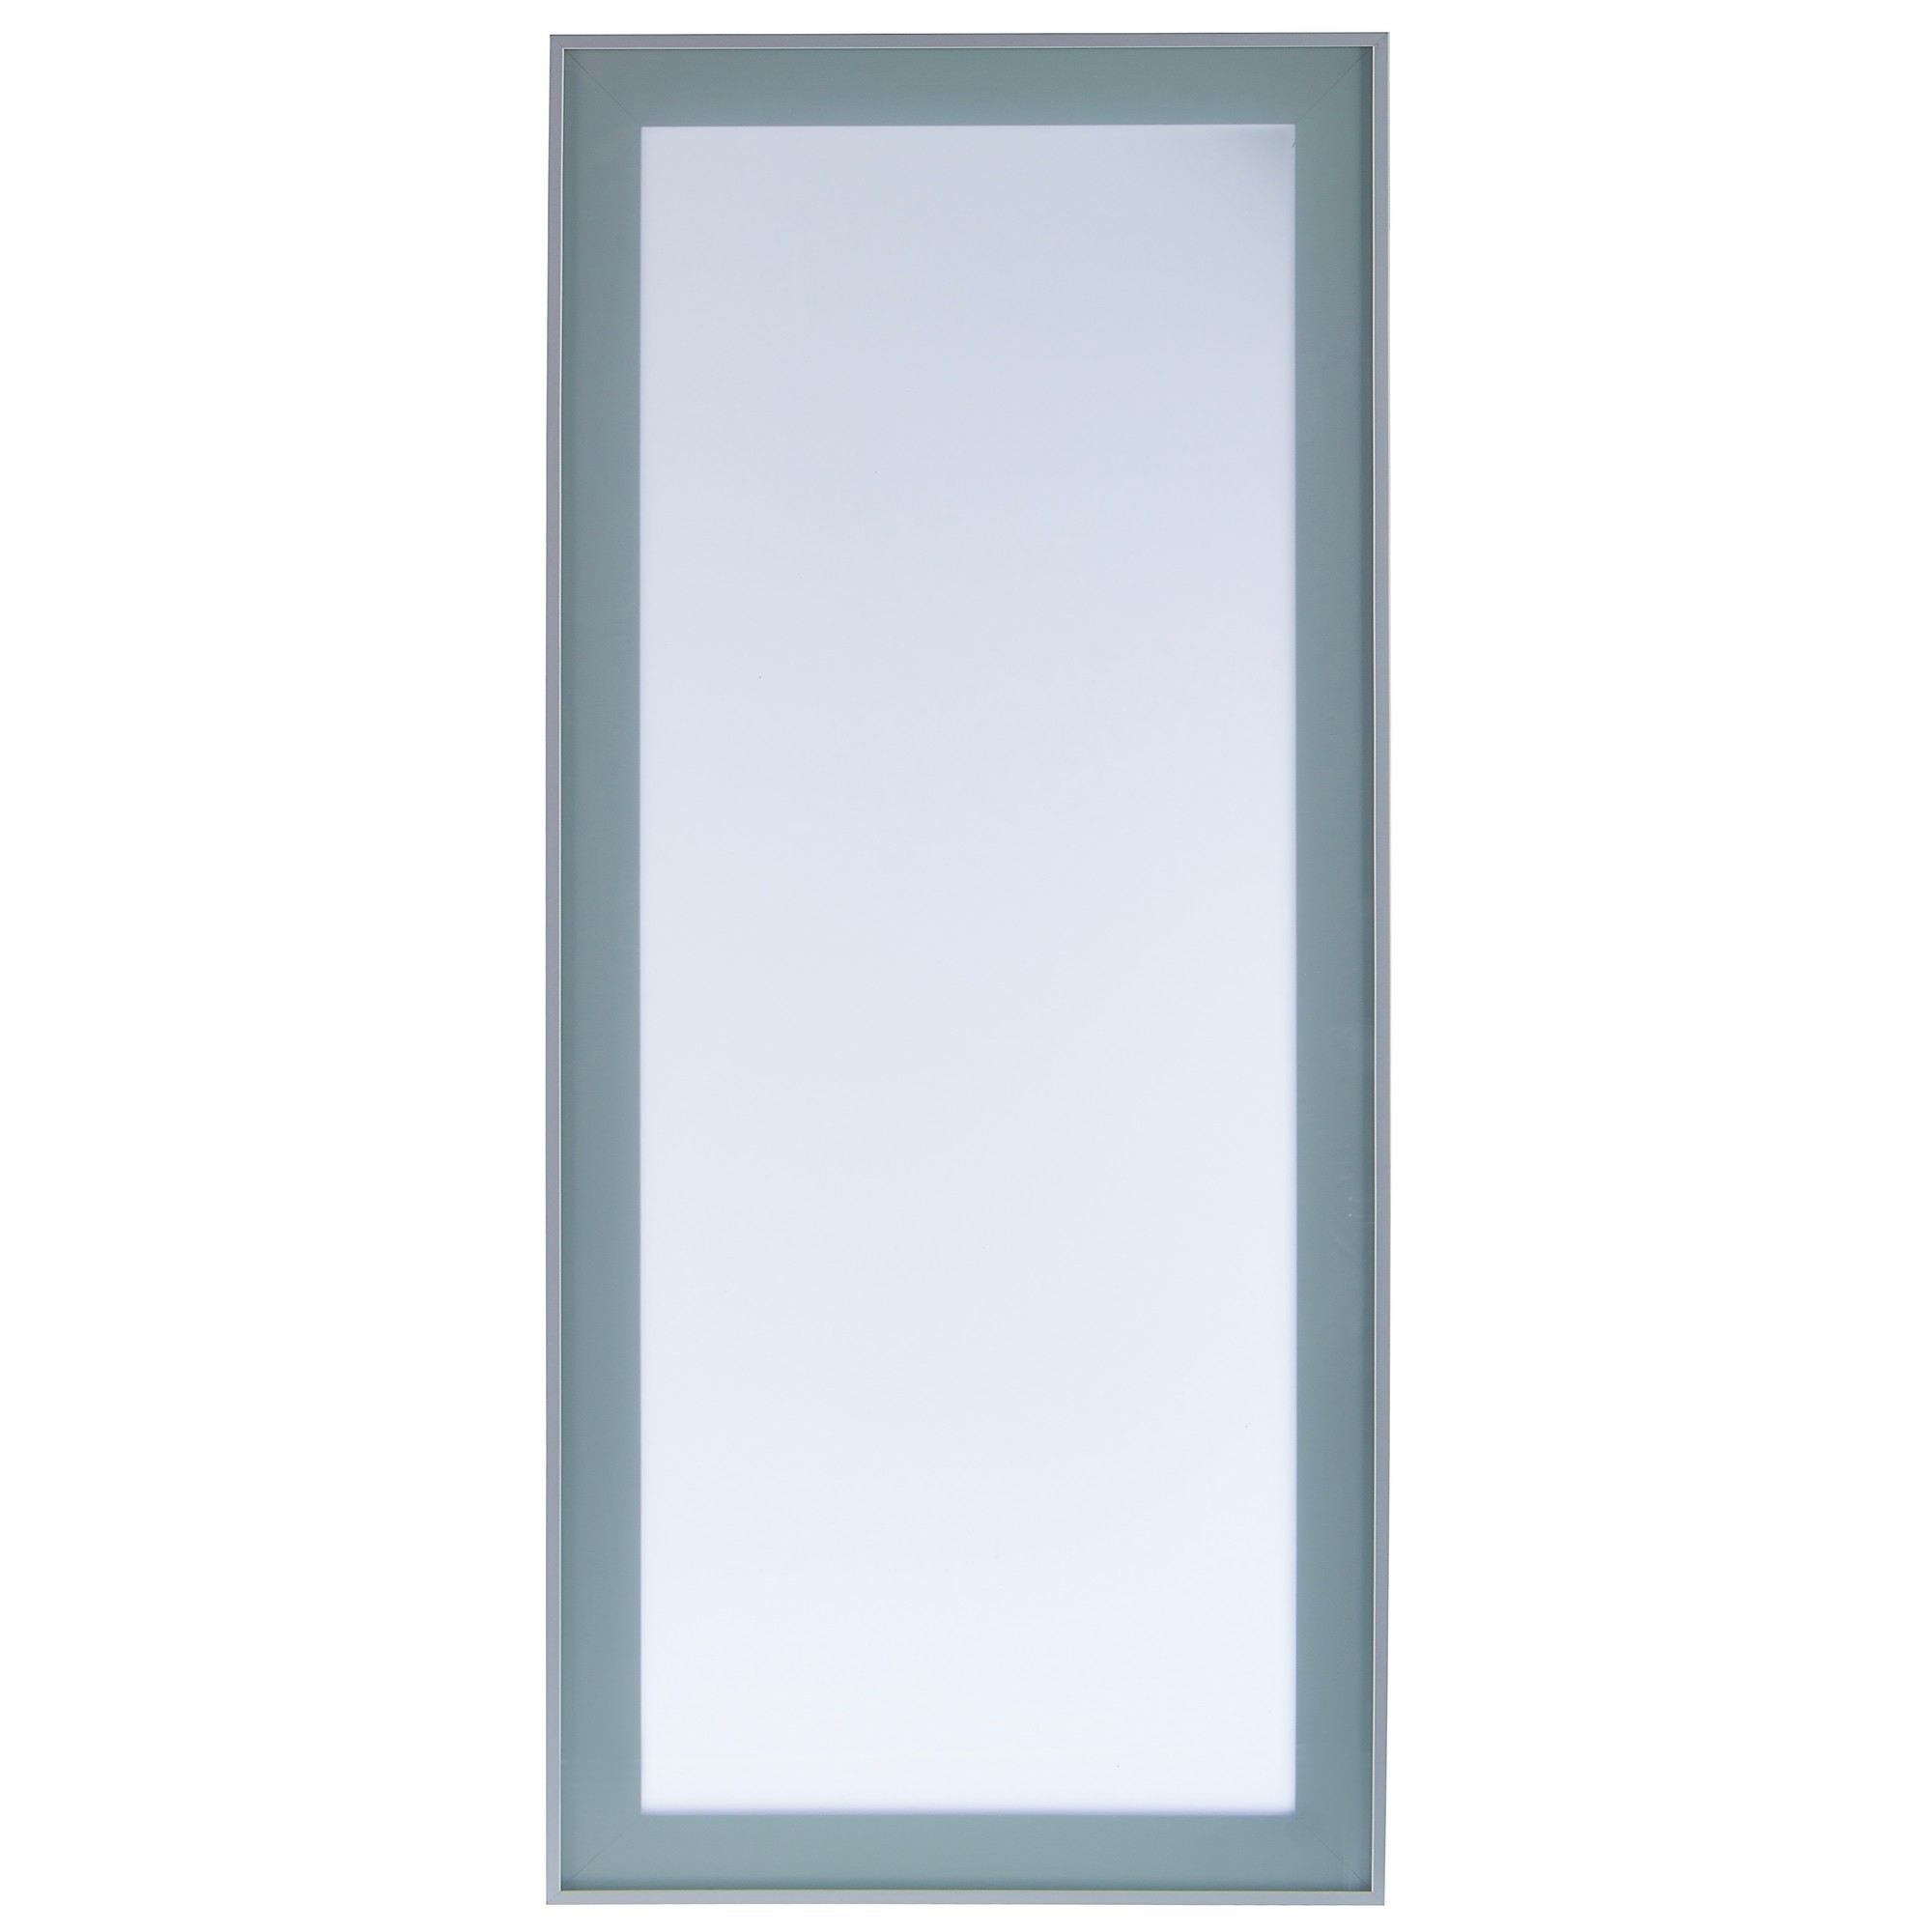 Витрина для шкафа Delinia «Фрост» 40x70 см, алюминий/стекло, цвет алюминий